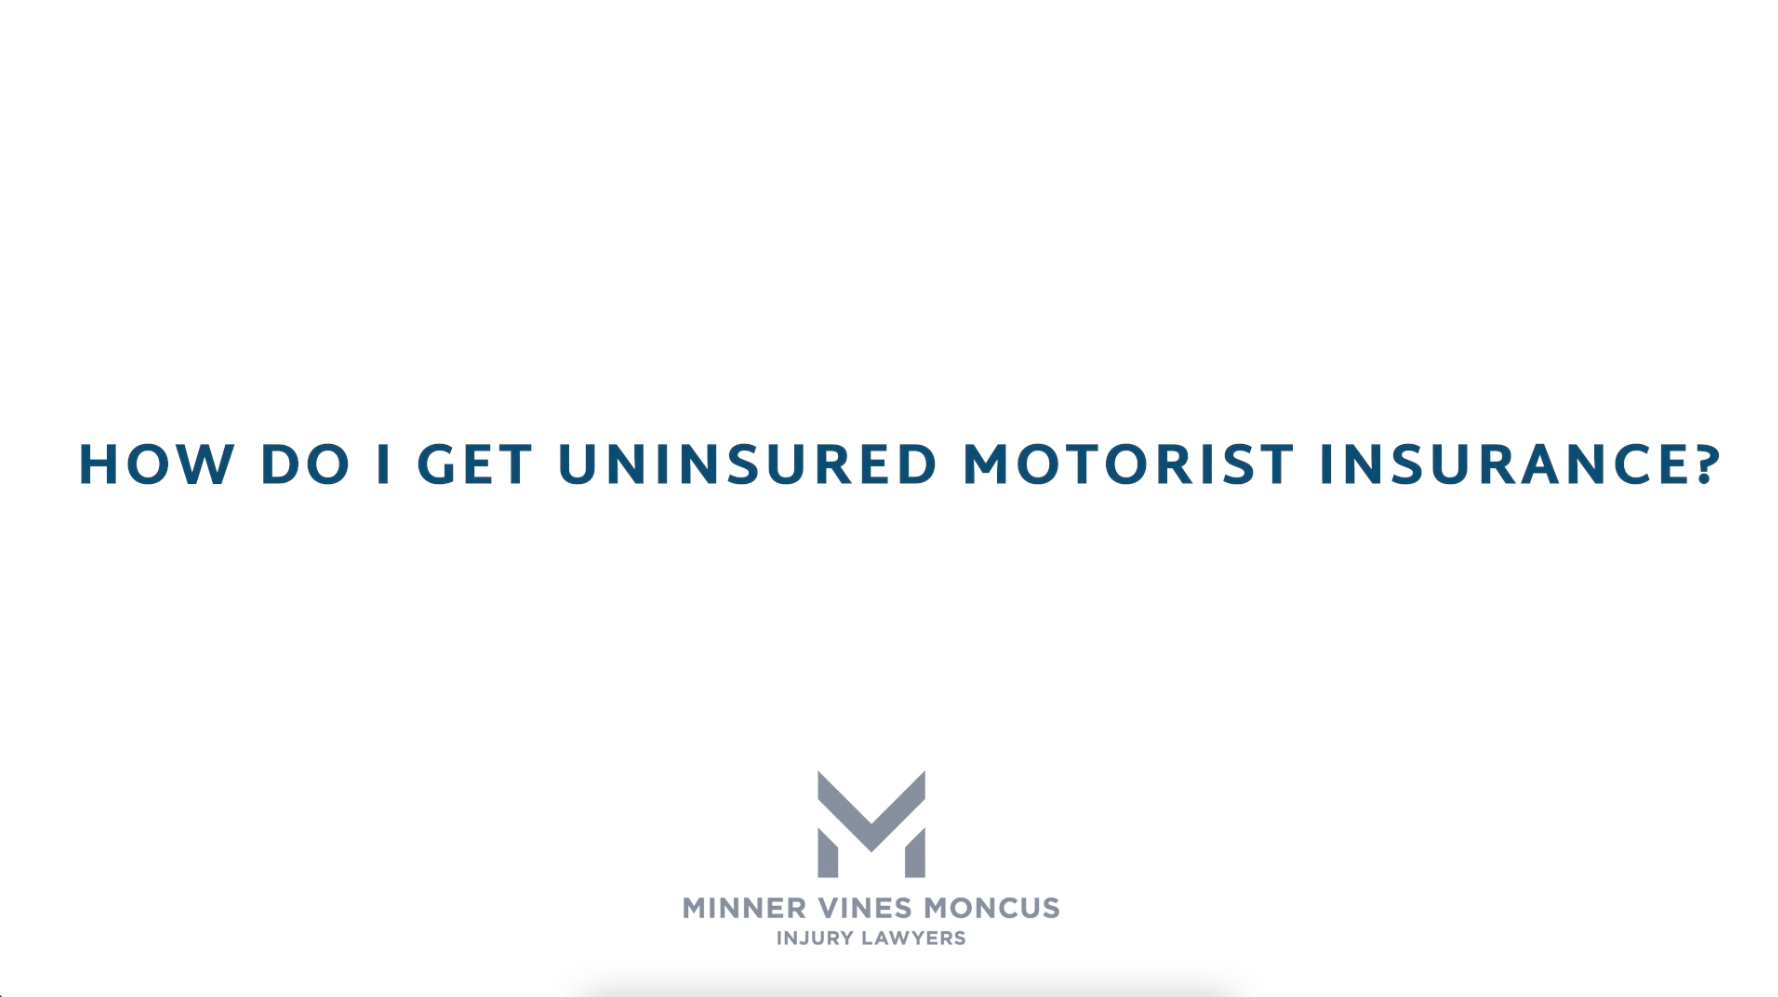 How do I get uninsured motorist insurance?